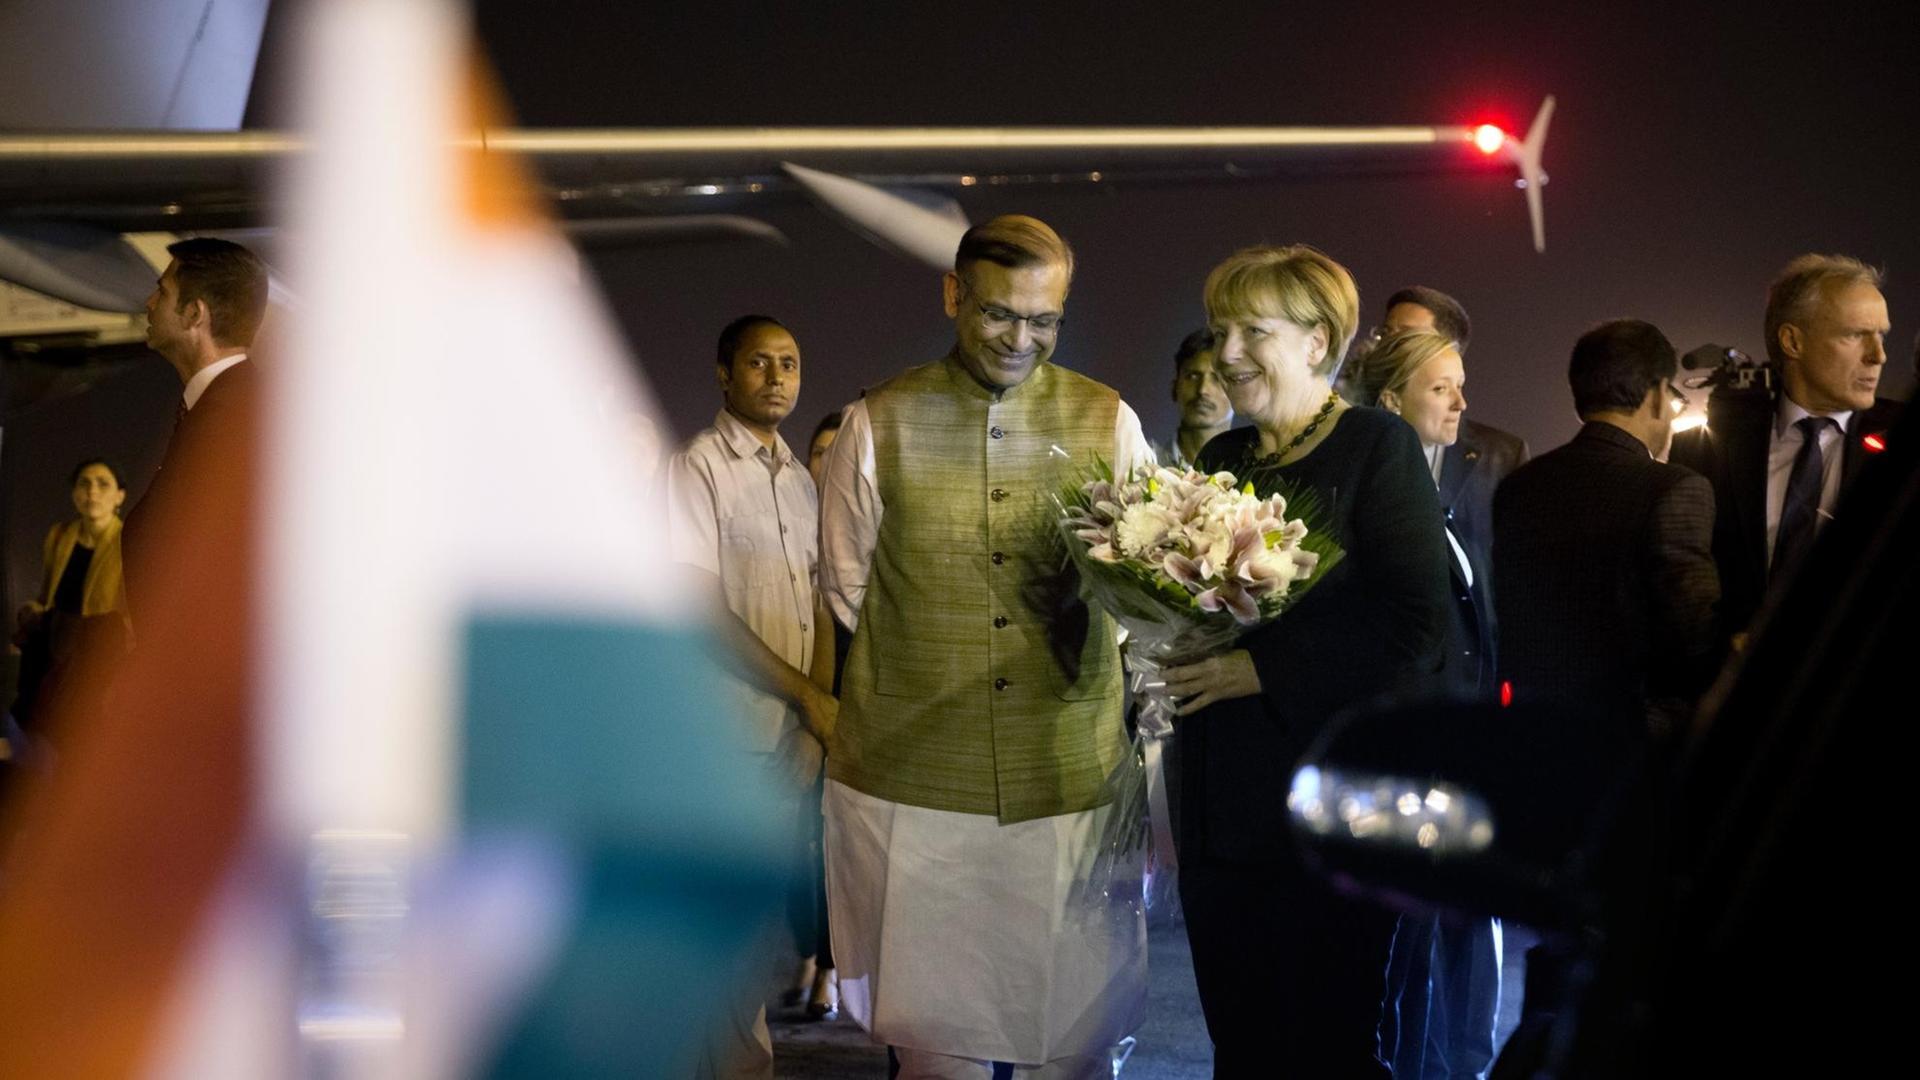 Bundeskanzlerin Angela Merkel (CDU) wird am 04.10.2015 auf dem militärischen Teil des Flughafens Indira-Gandhi-International in Neu Delhi vom indischen Staatsminister für Finanzen Jayant Sinha begrüßt. Hier nimmt die Kanzlerin an den dritten deutsch-indischen Regierungskonsultationen teil. Bei dem Treffen mit der national-hinduistischen Regierung von Premierminister Modi geht es schwerpunktmäßig um Klima-, Wirtschafts- und Bildungspolitik.